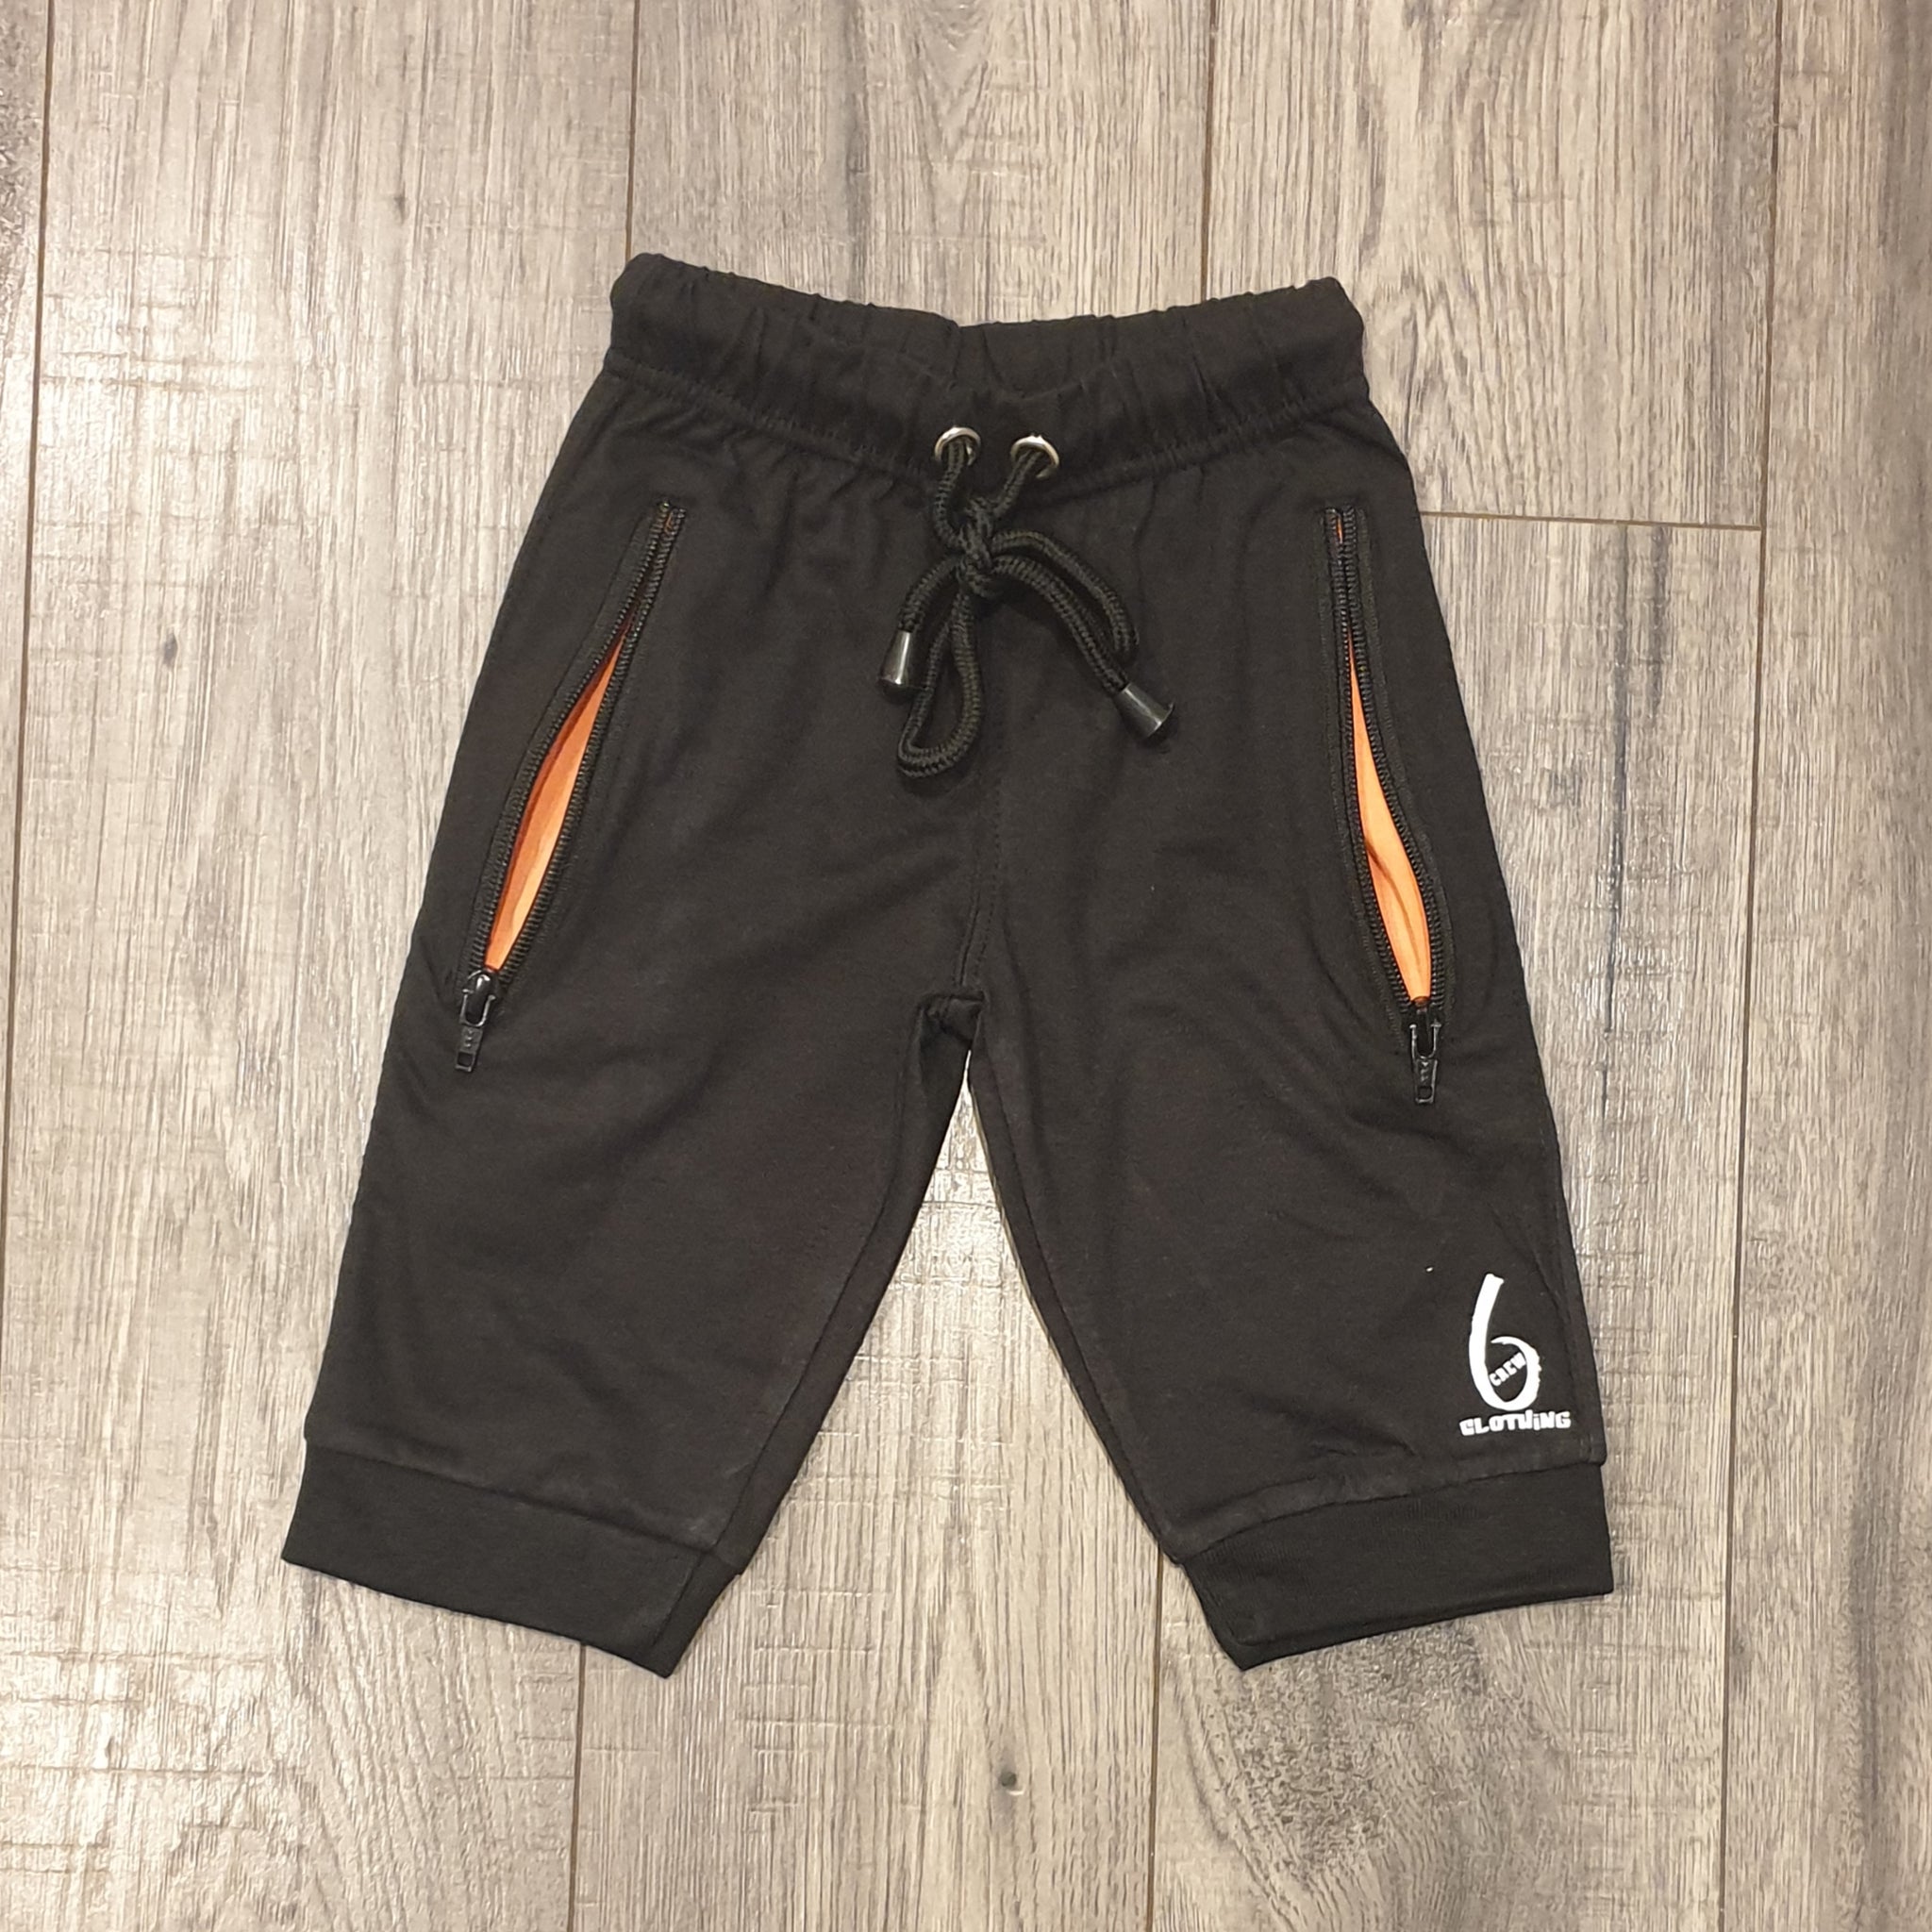 Long Zip Pocket Shorts- BLACK/CORAL